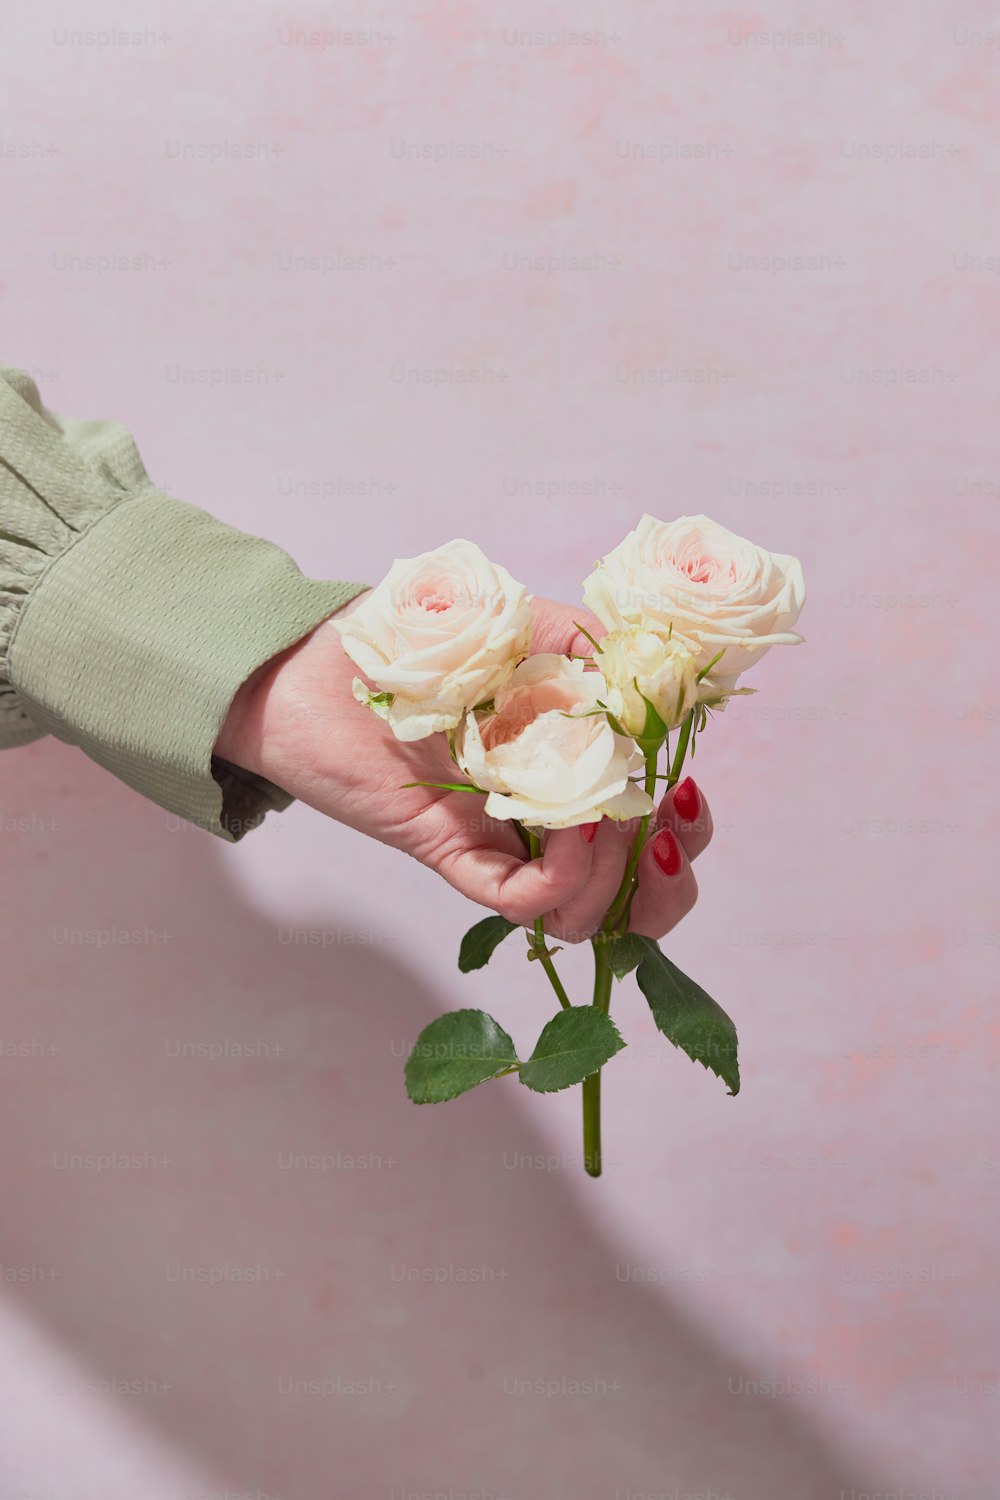 eine Person, die einen Blumenstrauß in der Hand hält